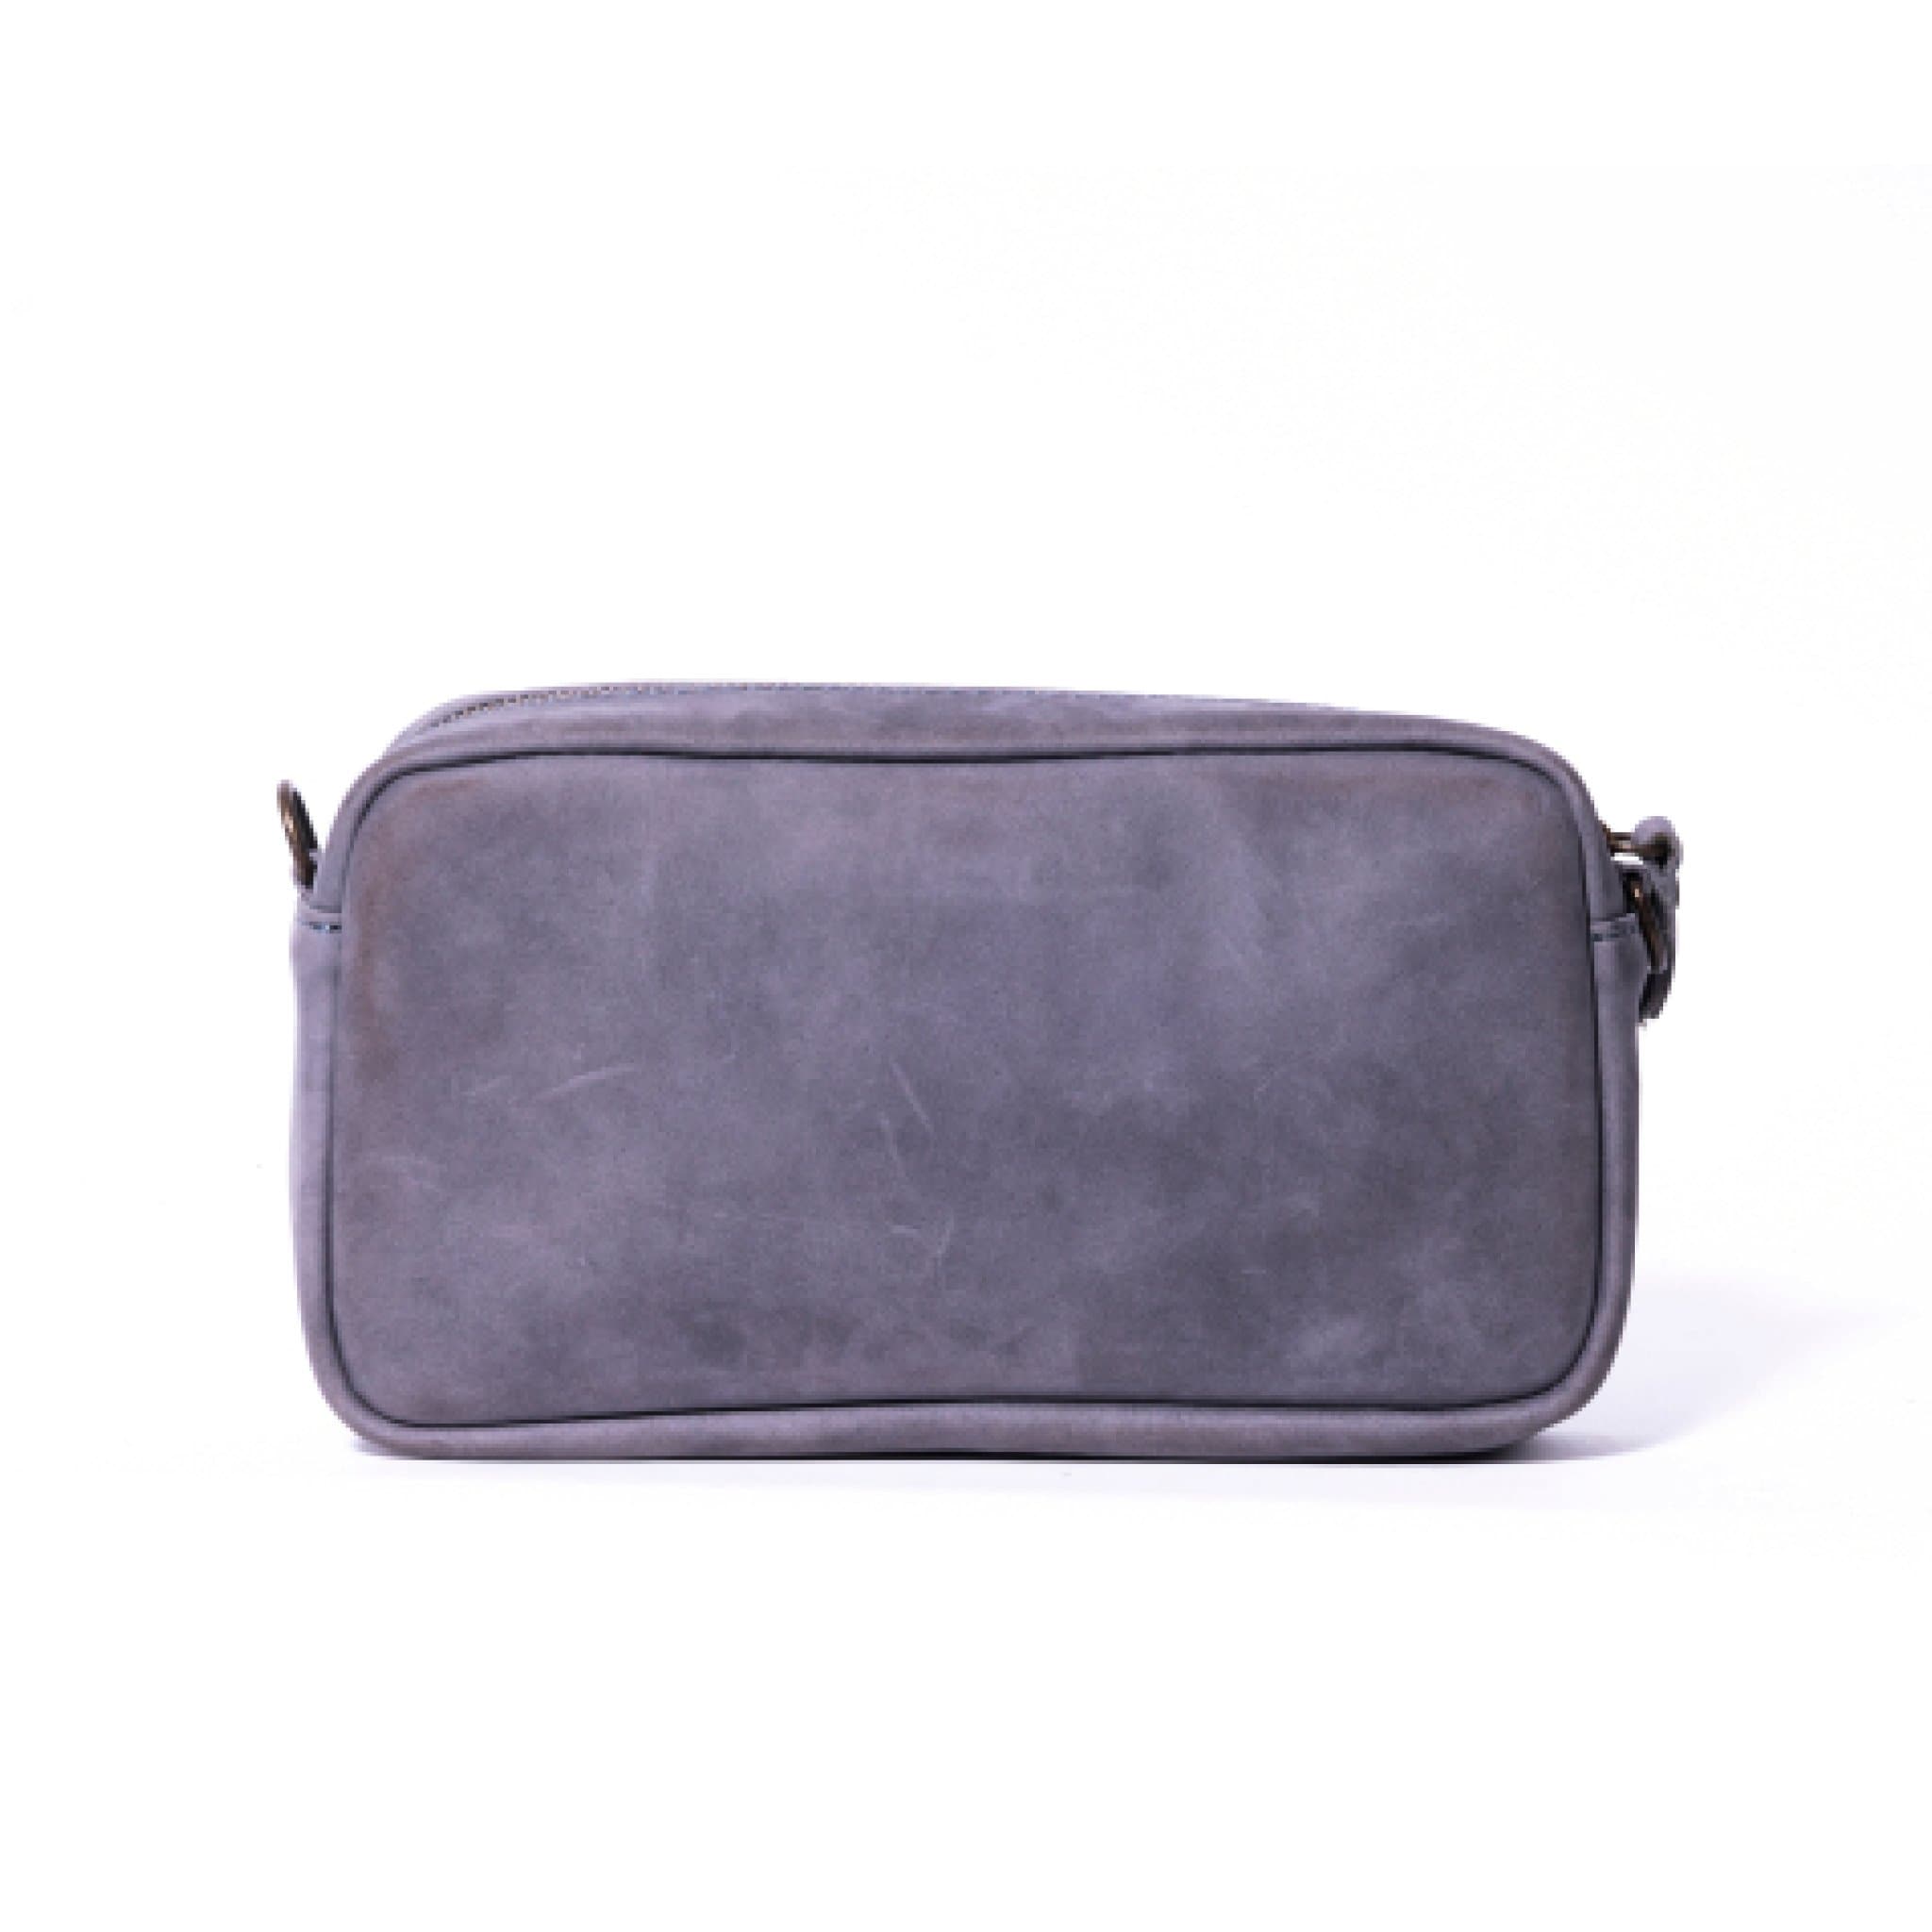 Chala Fox Mini Crossbody Handbag: Handbags: Amazon.com